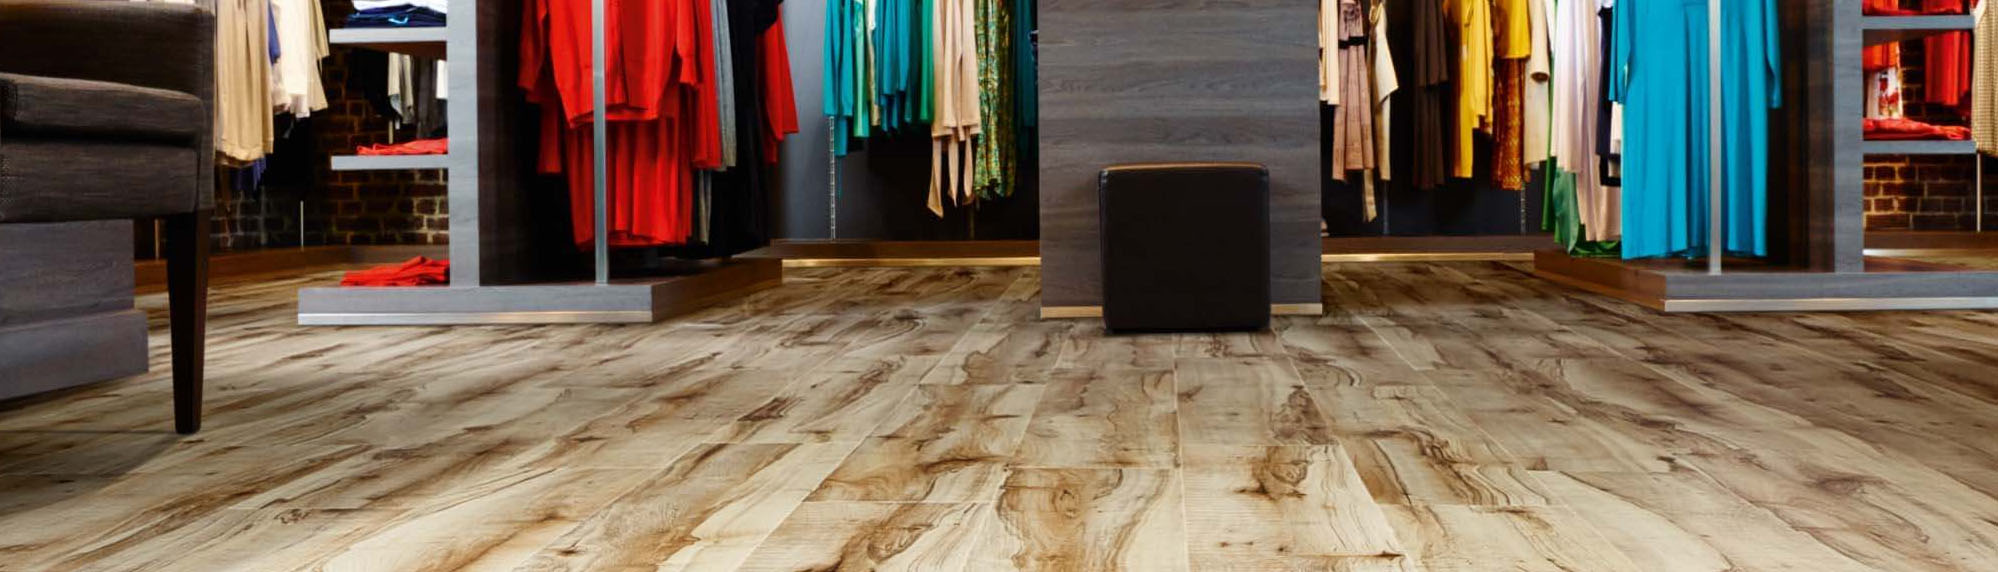 Bespoke Shop Flooring Bespoke Shop Flooring Image